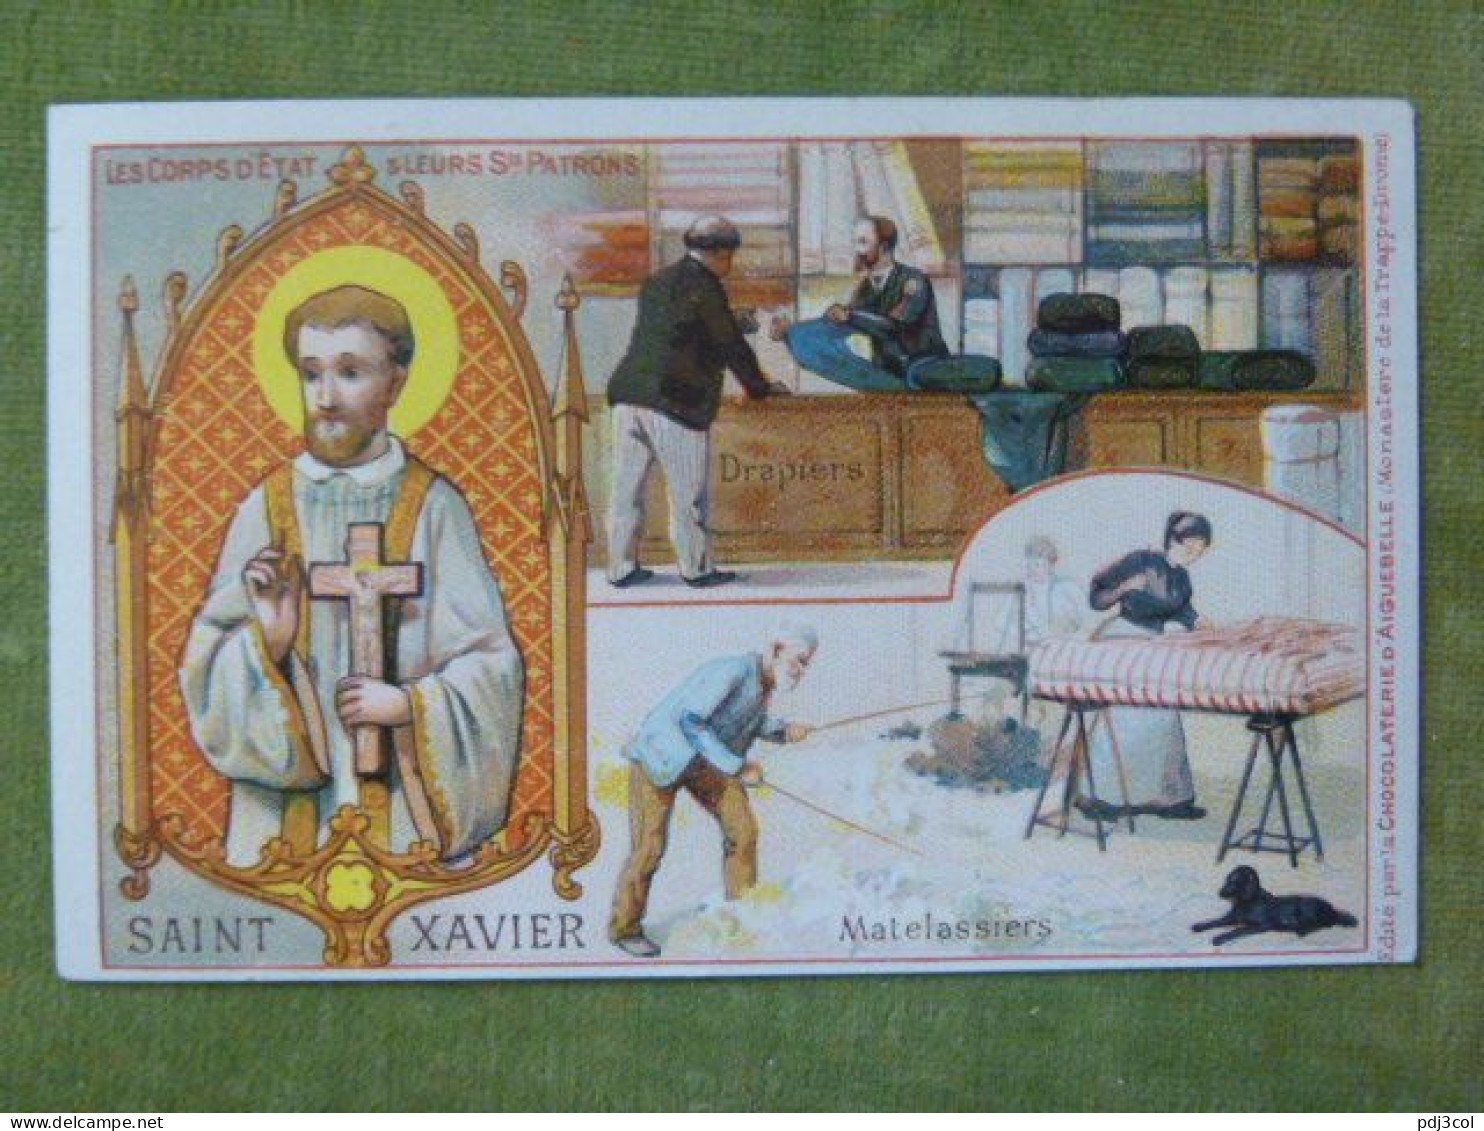 Série Les Corps D'état & Leurs Sts Patrons - Saint Xavier - Matelassiers, Drapiers - Aiguebelle